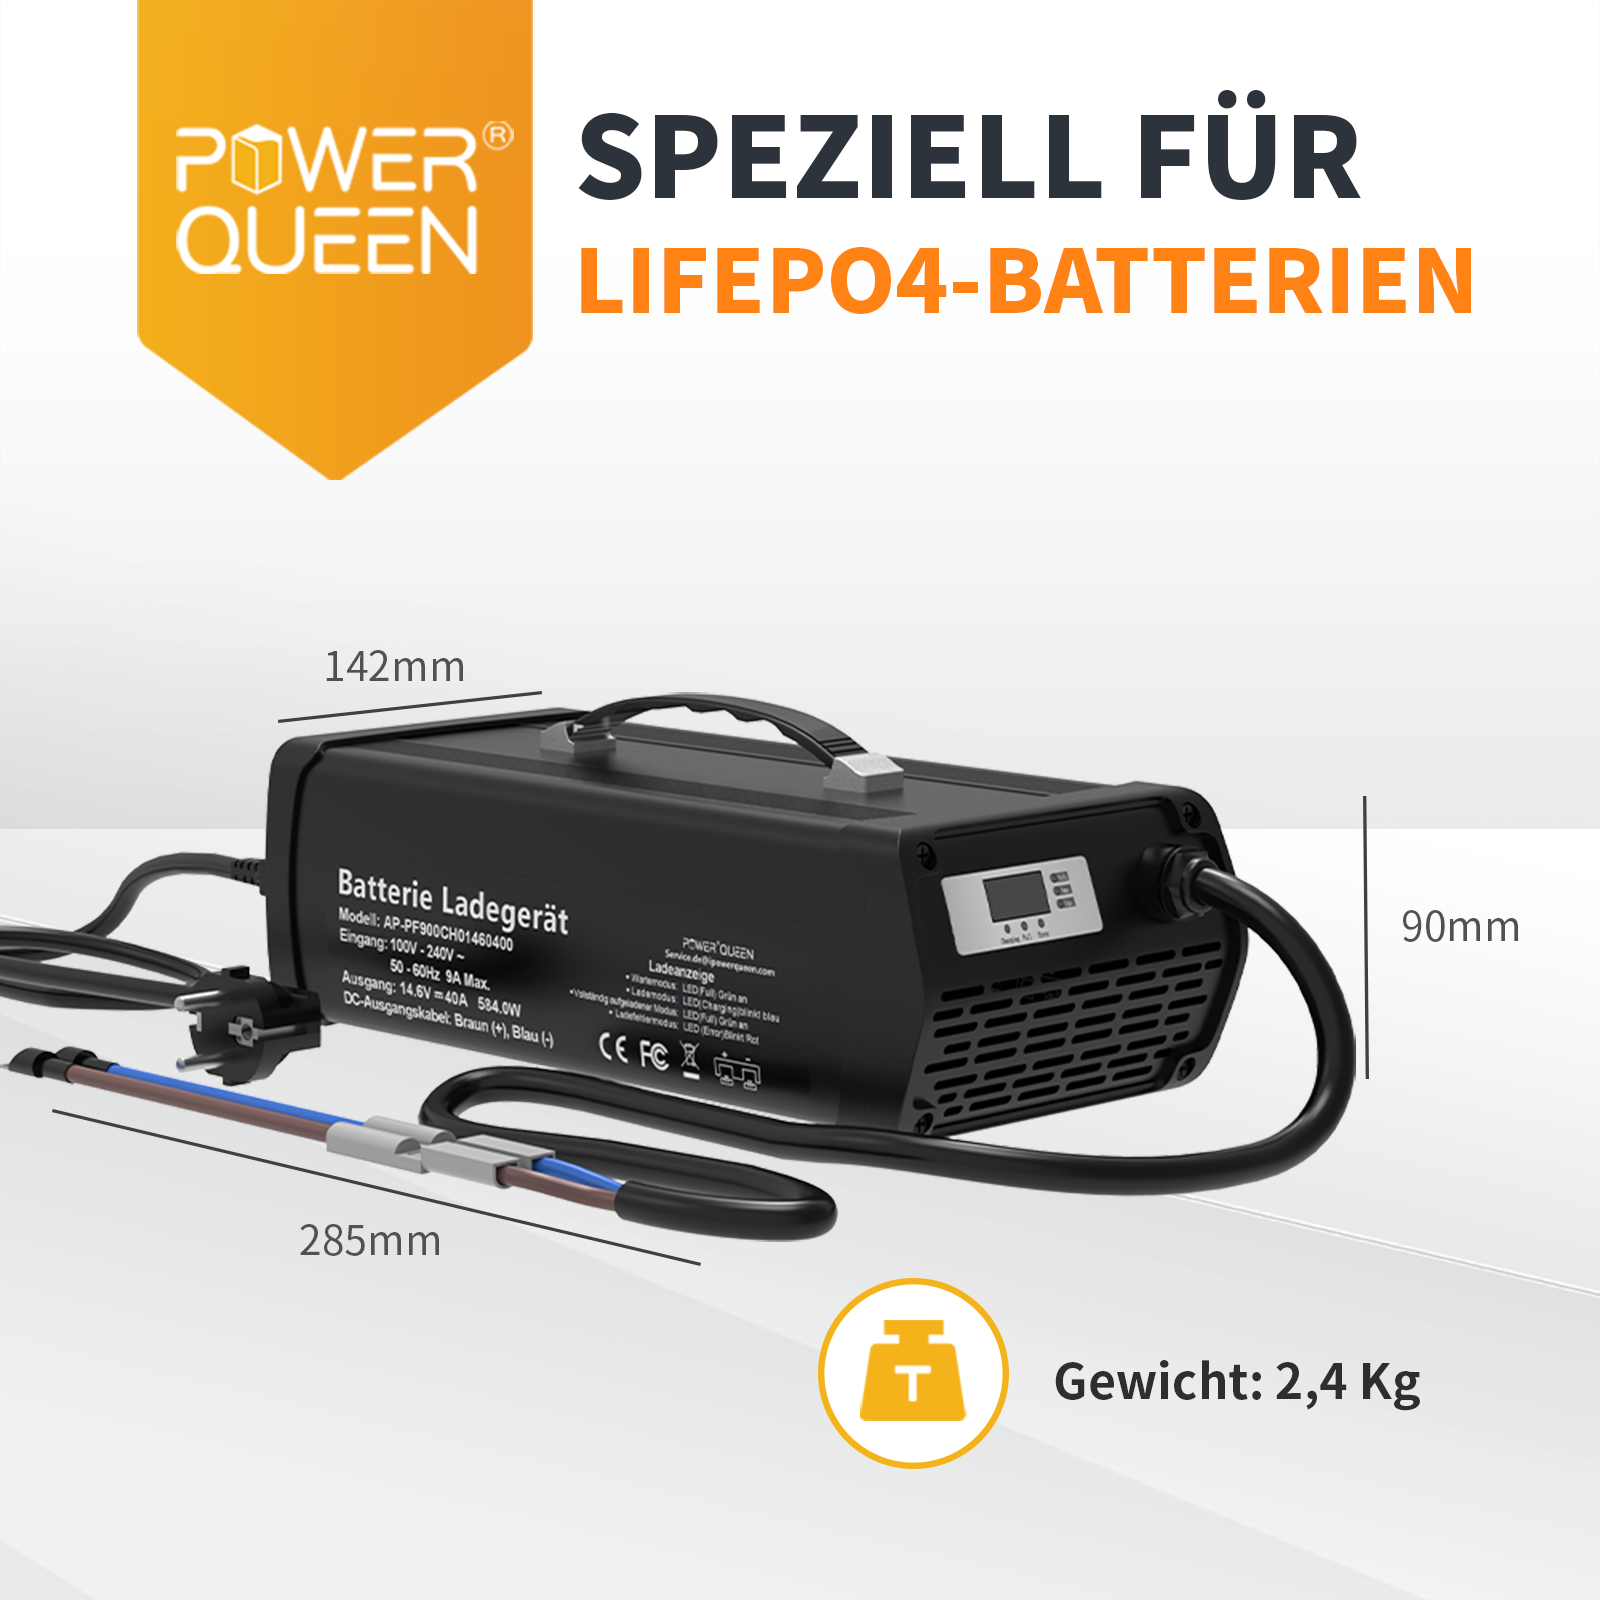 Chargeur Power Queen 14,6V 40A LiFePO4 avec poignée pour batterie 12V LiFePO4